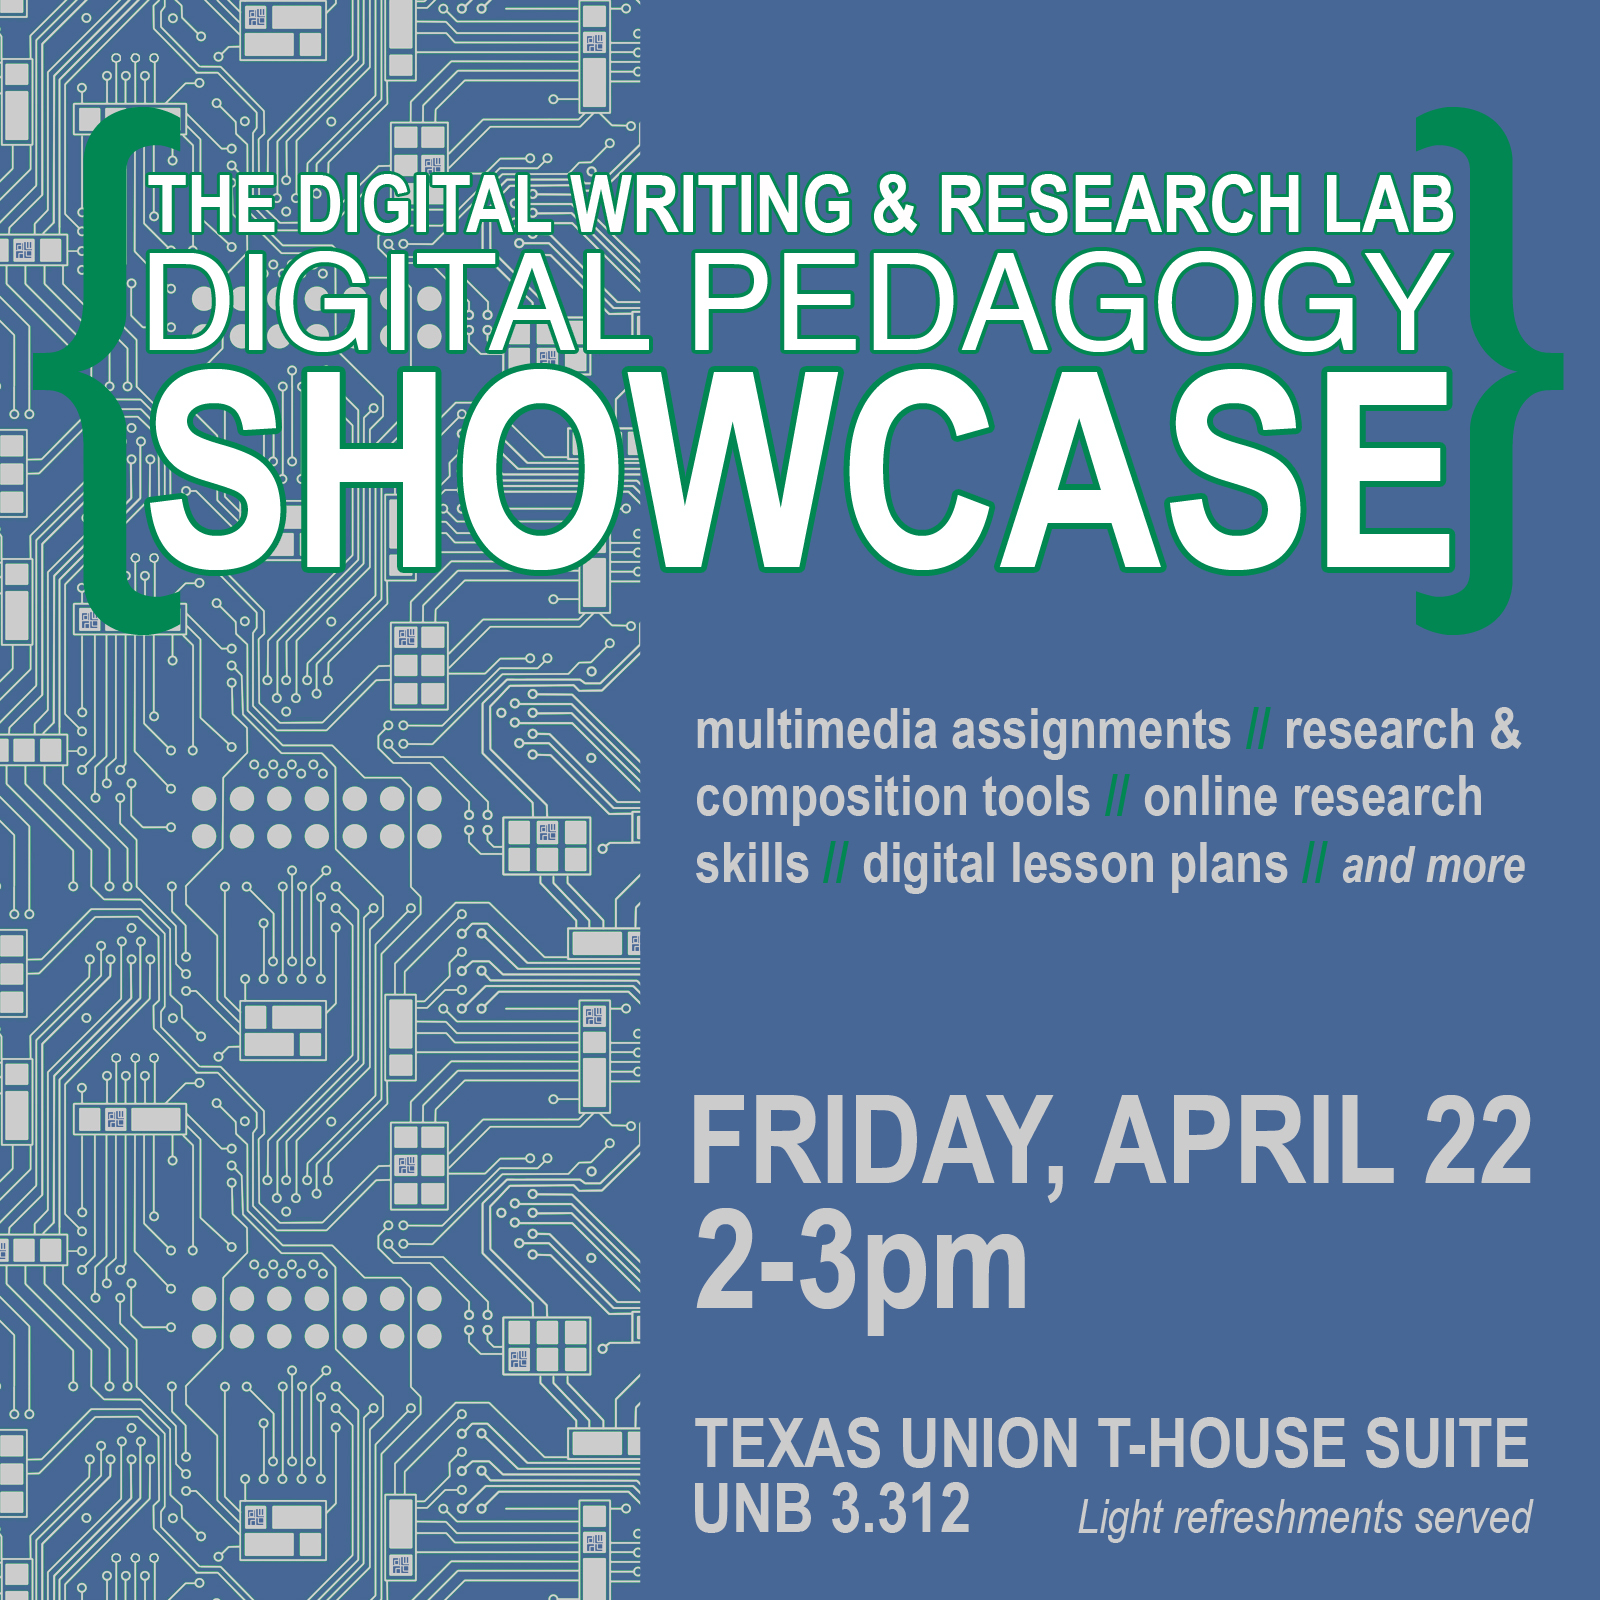 Flier for Digital Pedagogy Showcase, 4/22/16, 2-3pm, Texas Union T-House suite